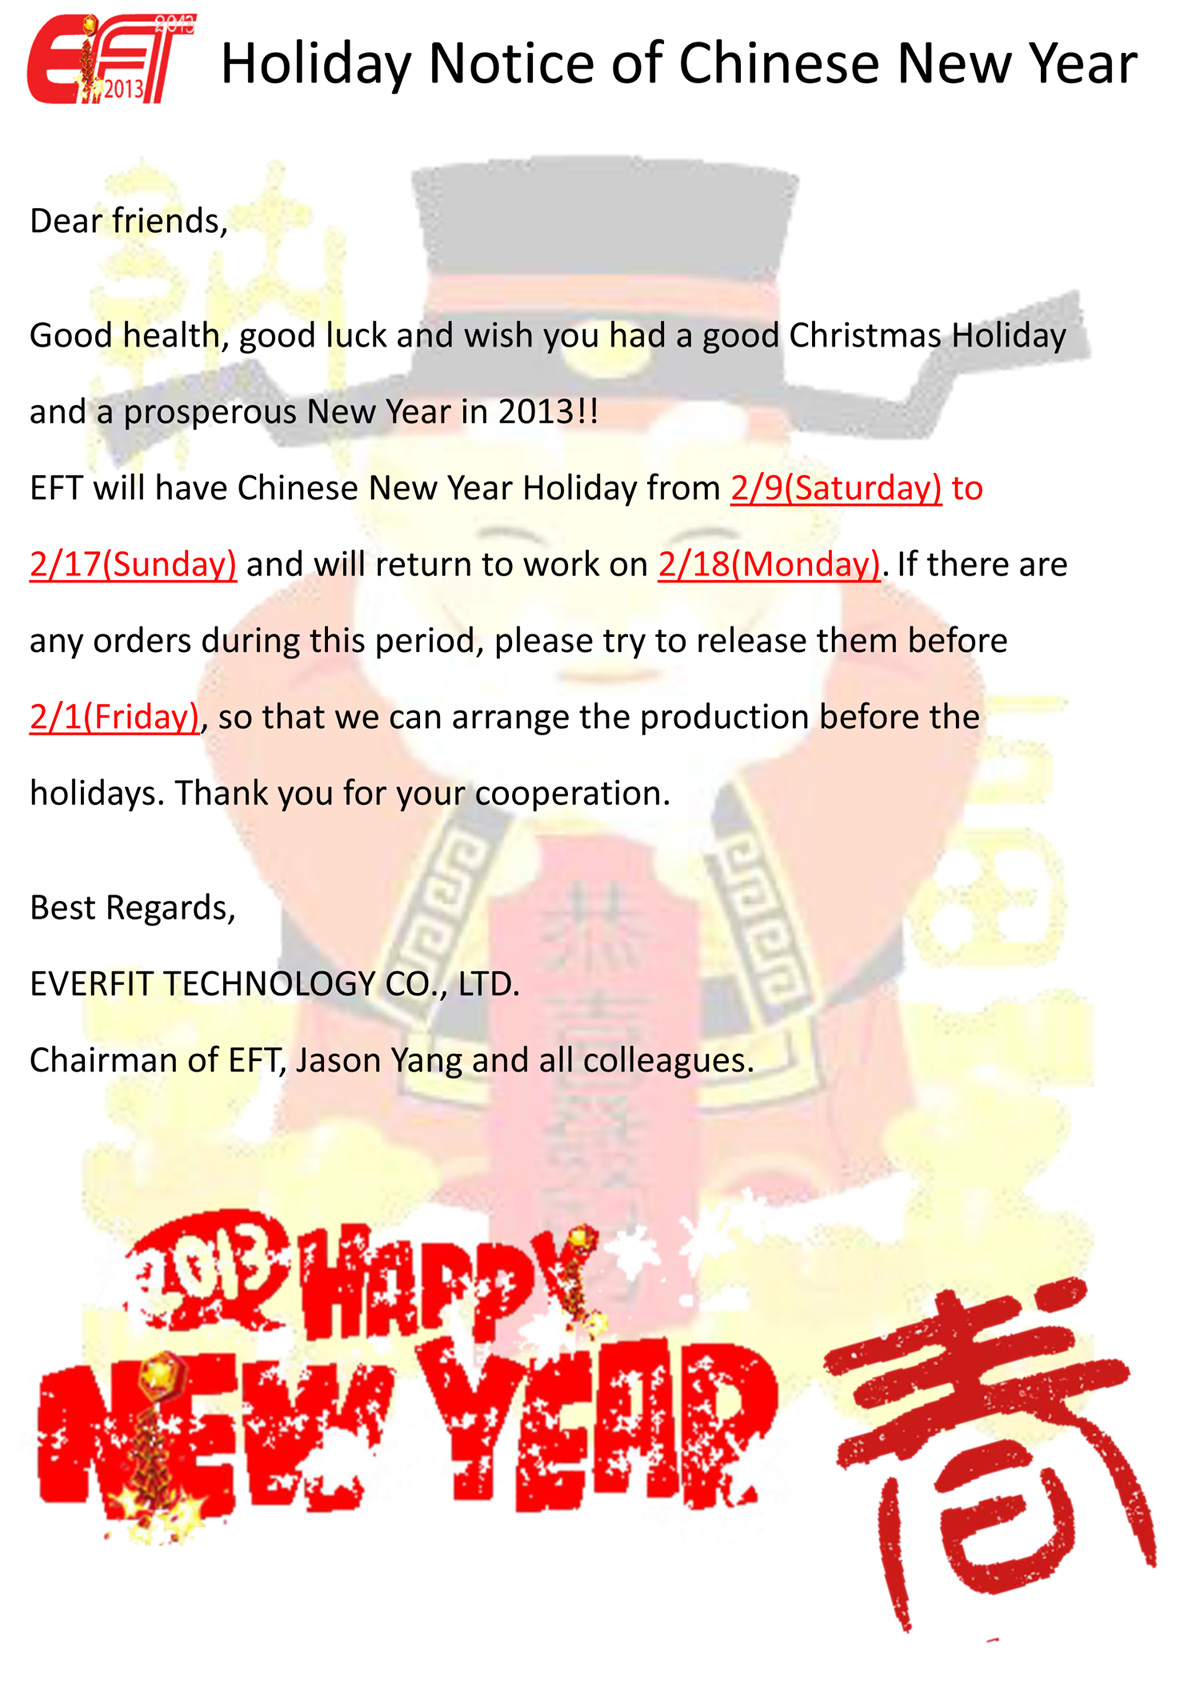 إشعار عطلة رأس السنة الصينية